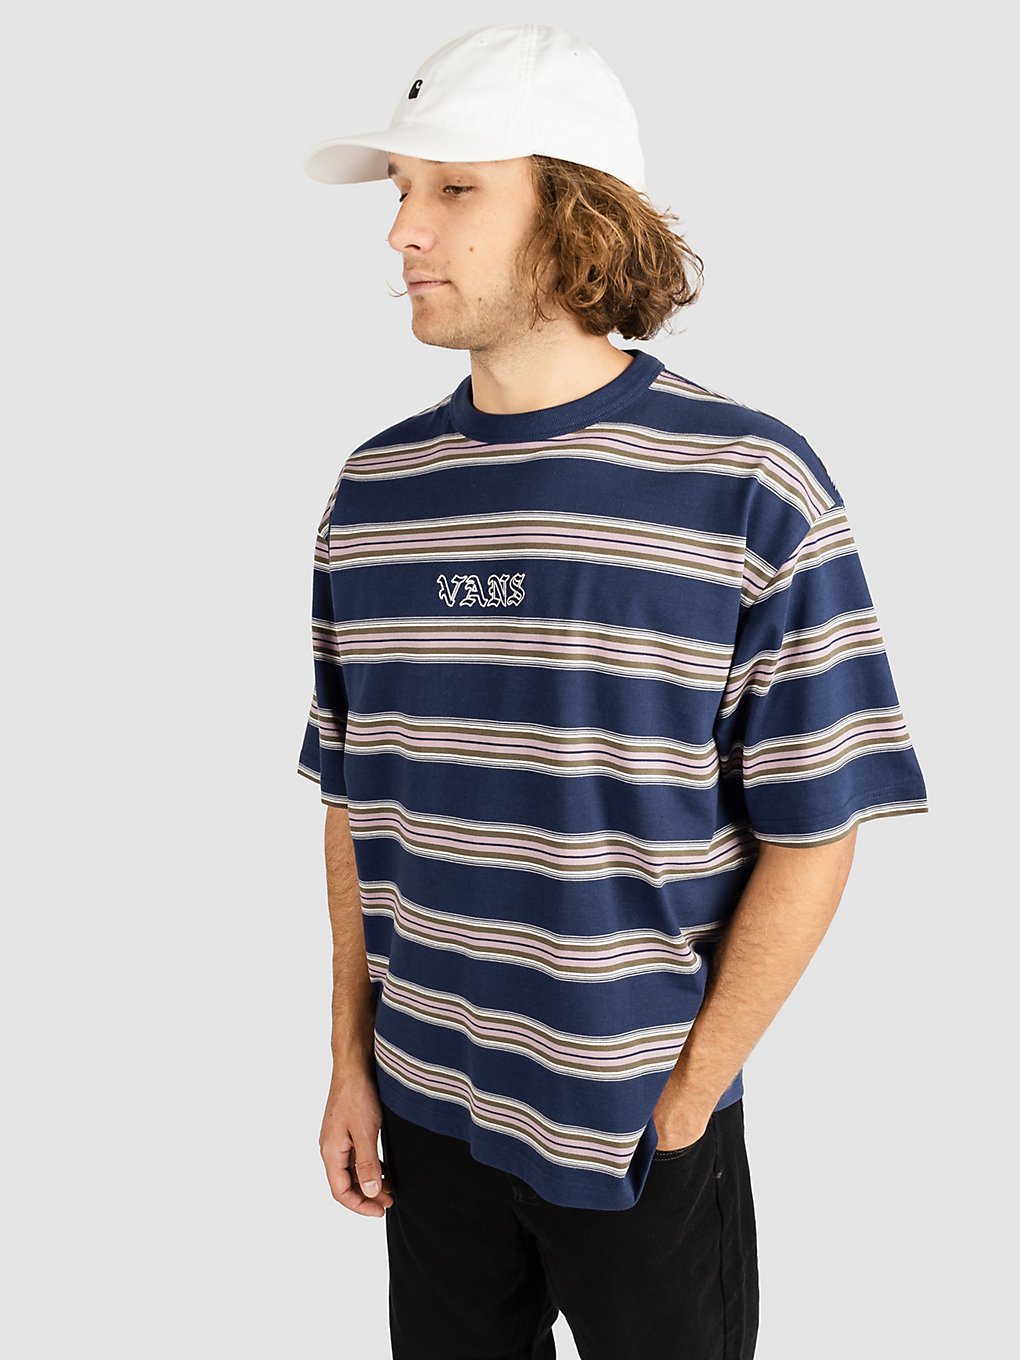 Vans Wilson T-Shirt dress blues kaufen